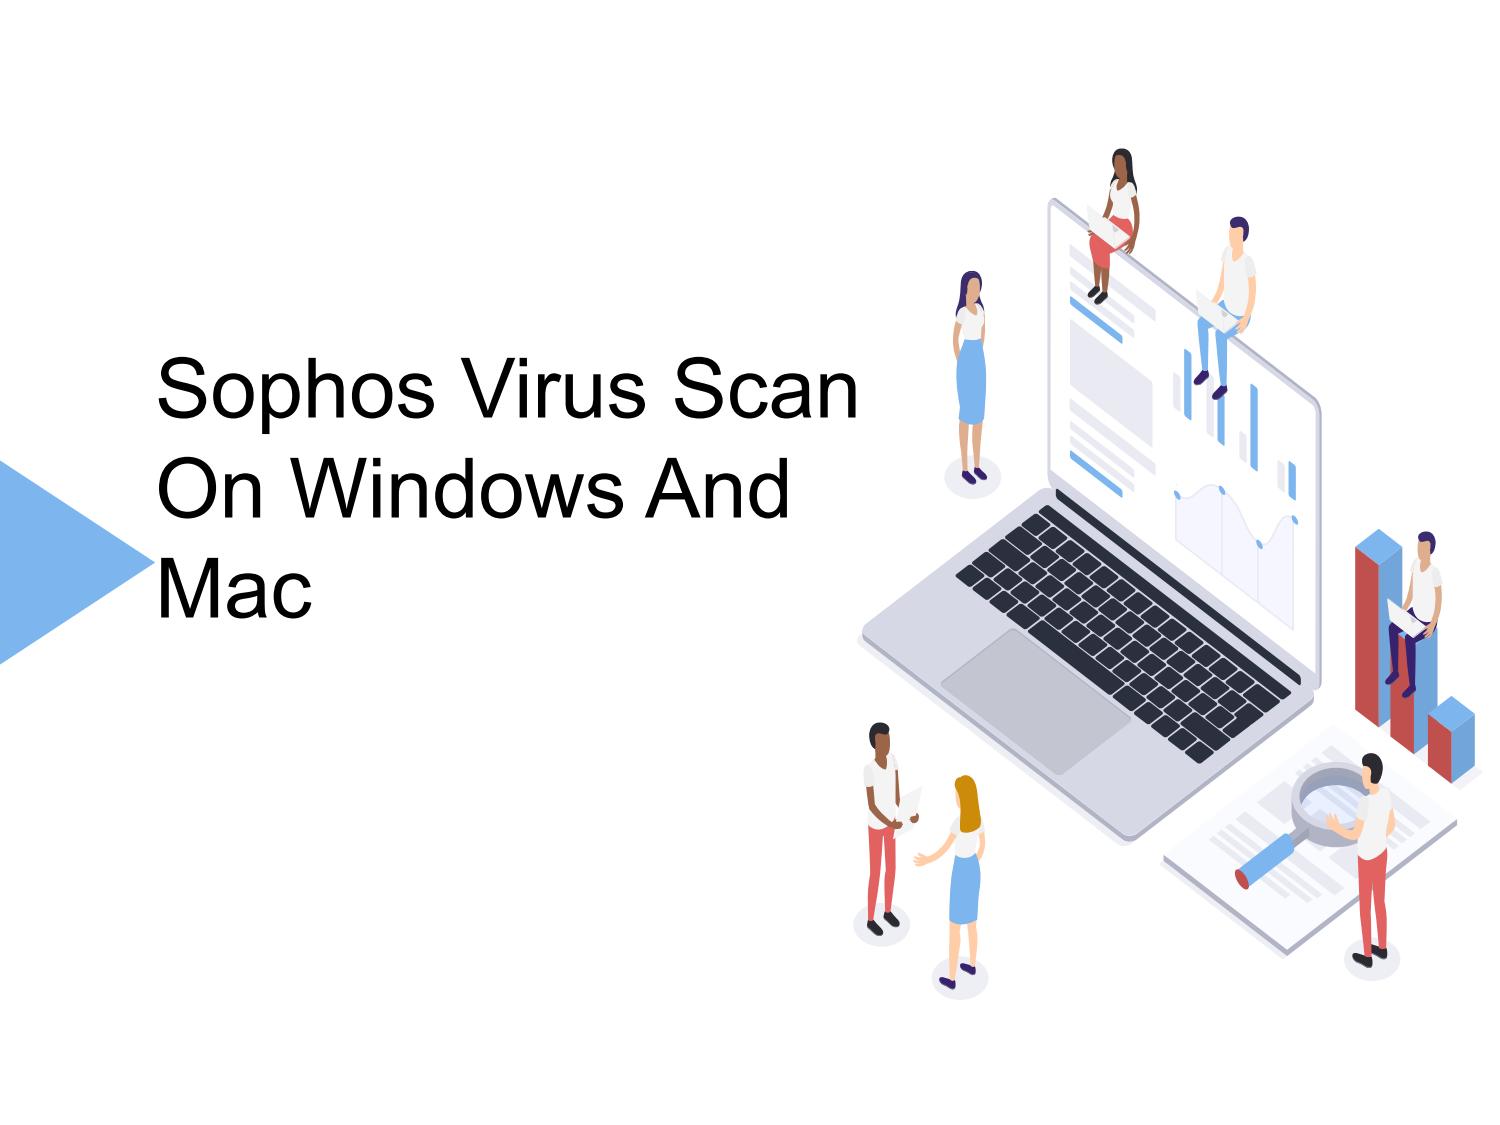 Virusscan For Mac